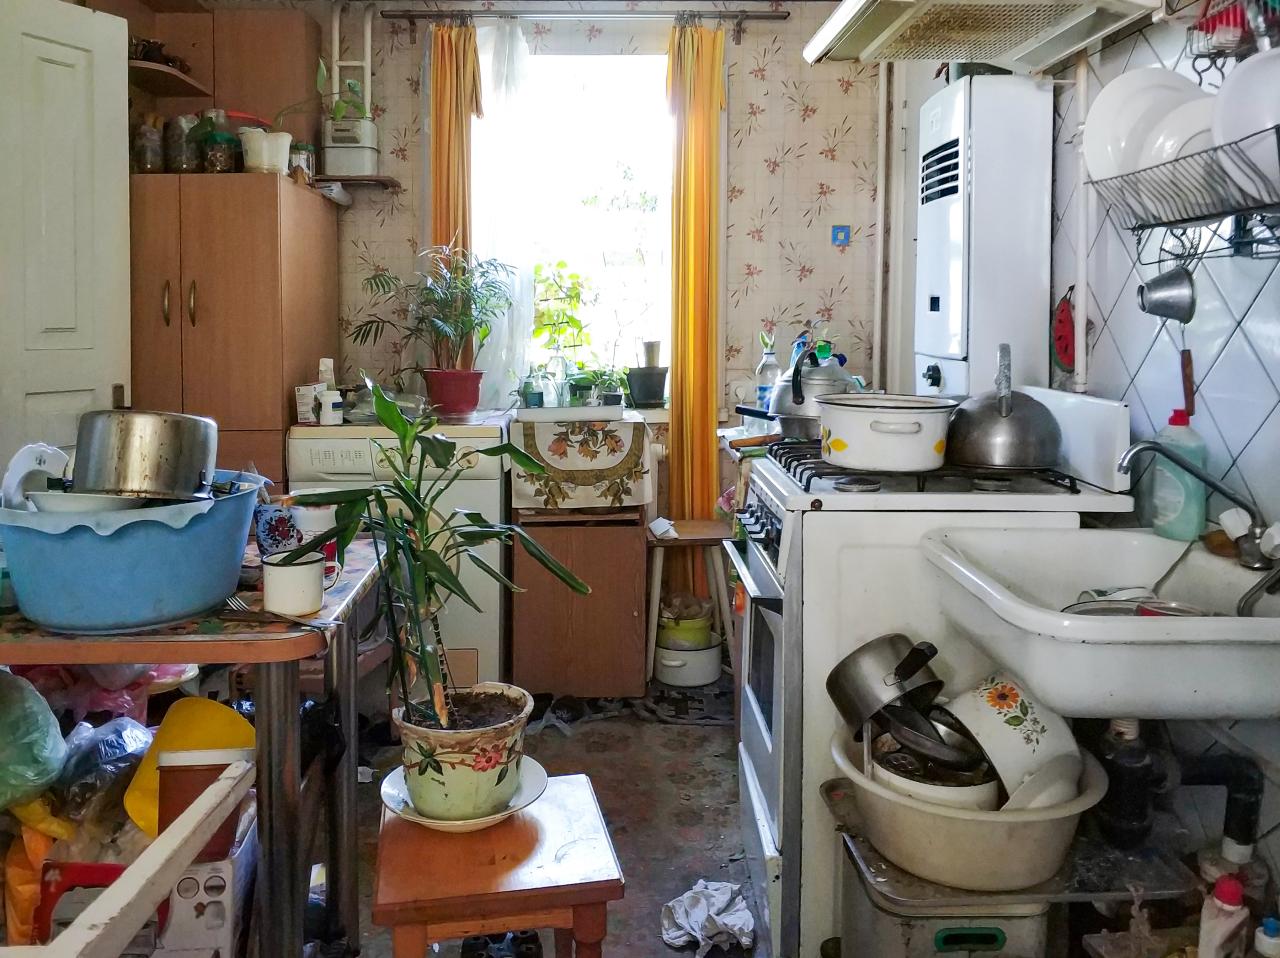 Une vieille cuisine complètement encombrée avec de la vaisselle sale partout.